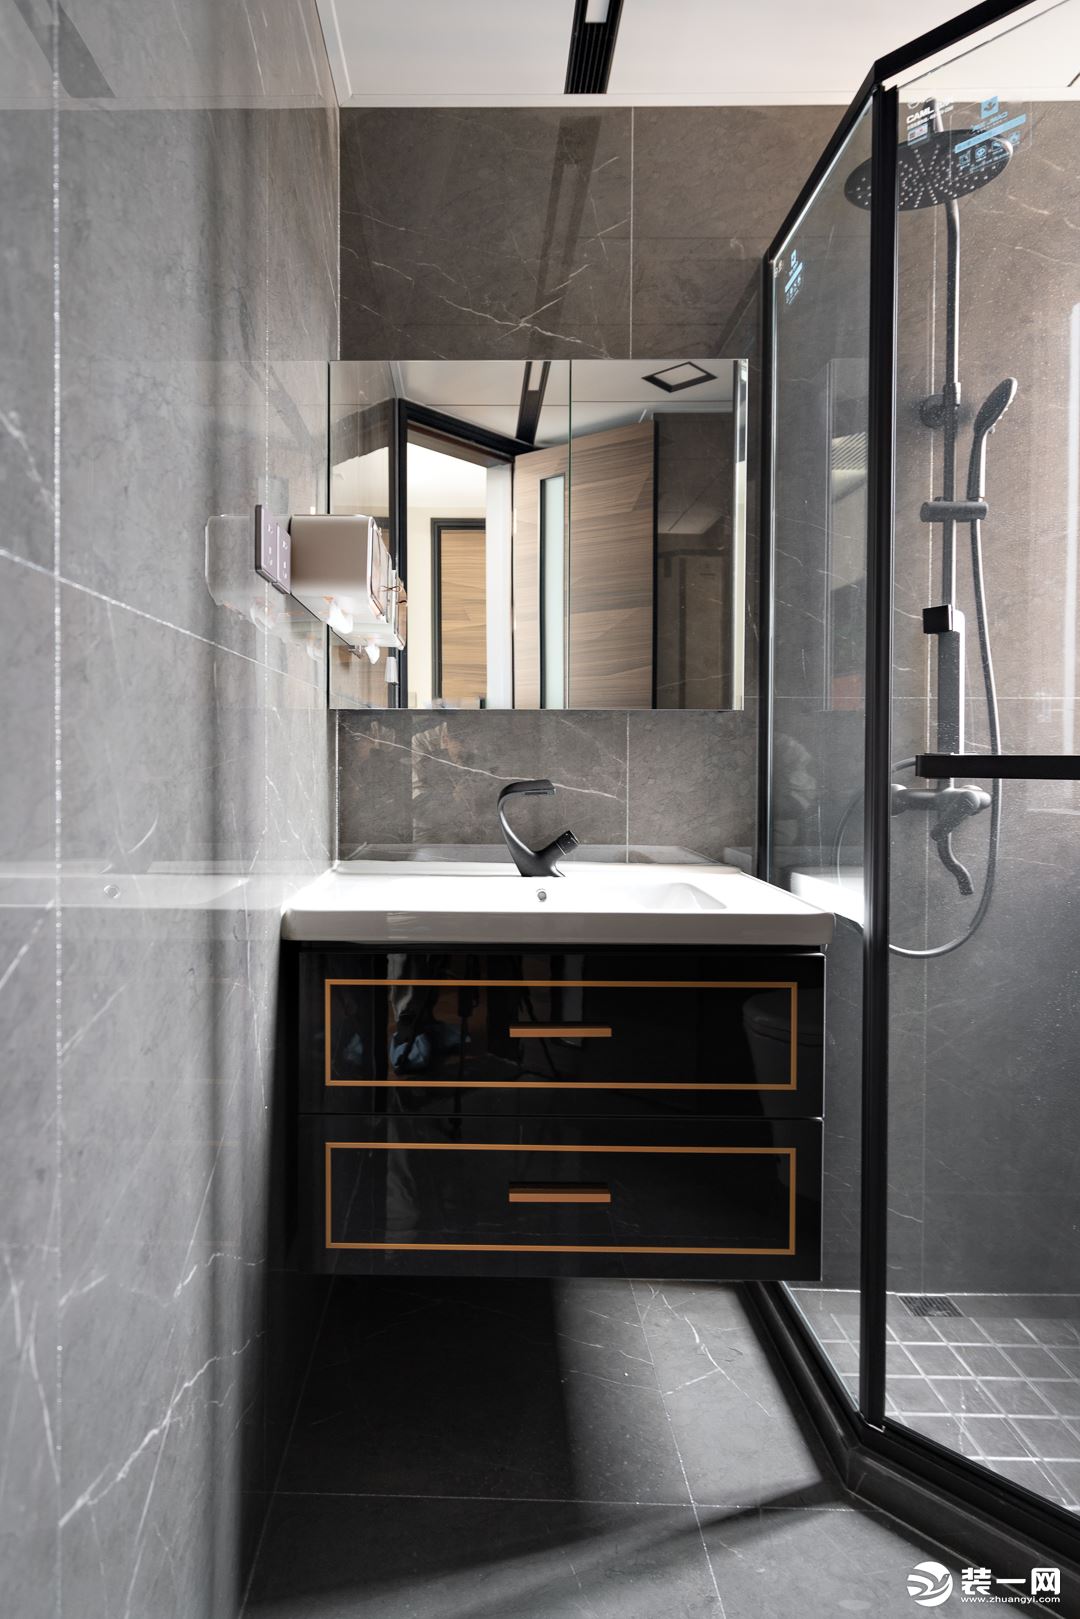 黑金搭配的悬挂式洗漱台精致摩登，淋浴房的黑色金属边框利落有型，让空间多了一份现代质感。